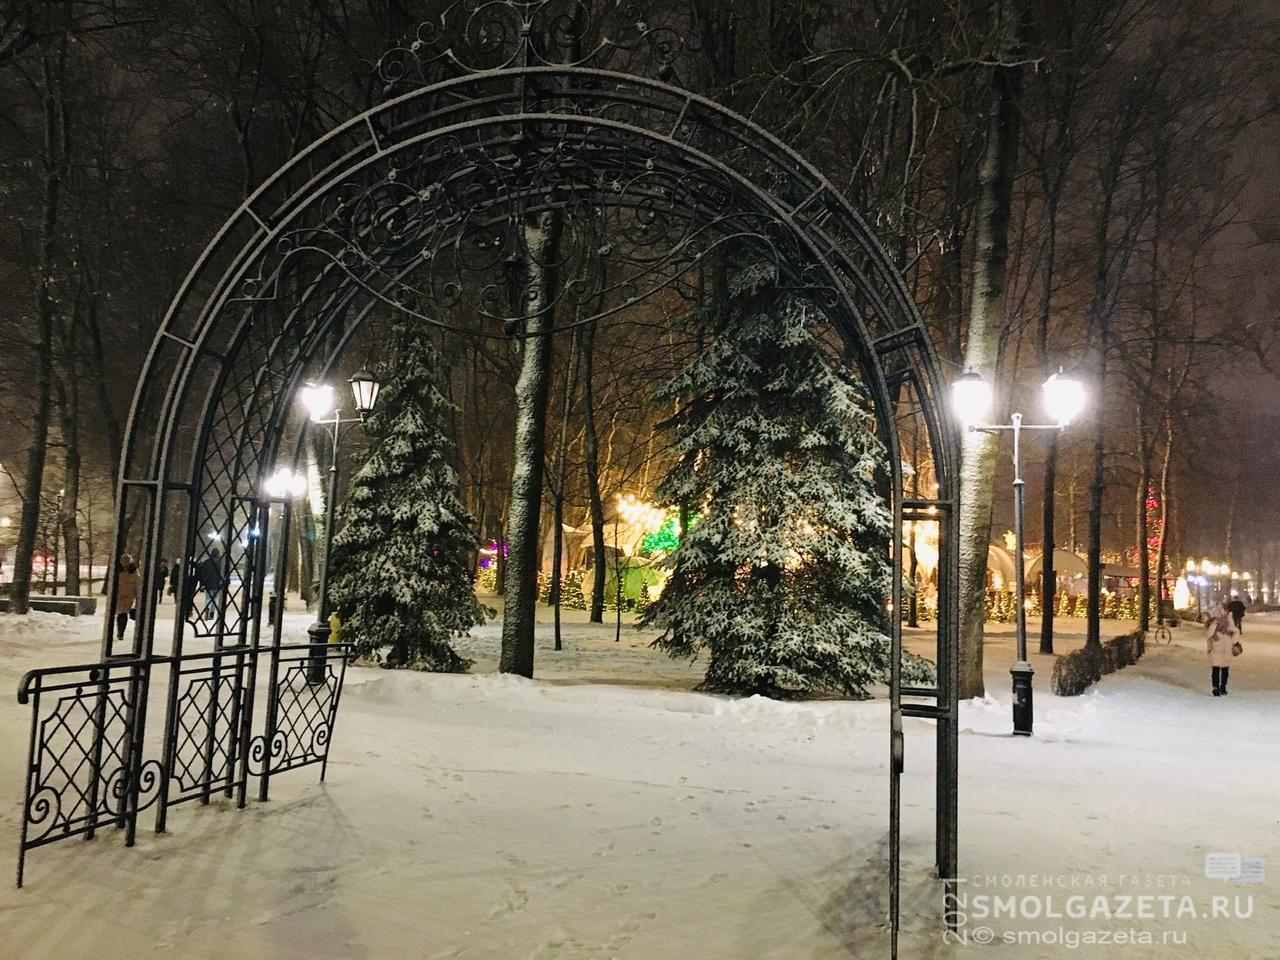 6 января в Смоленской области будет снежно